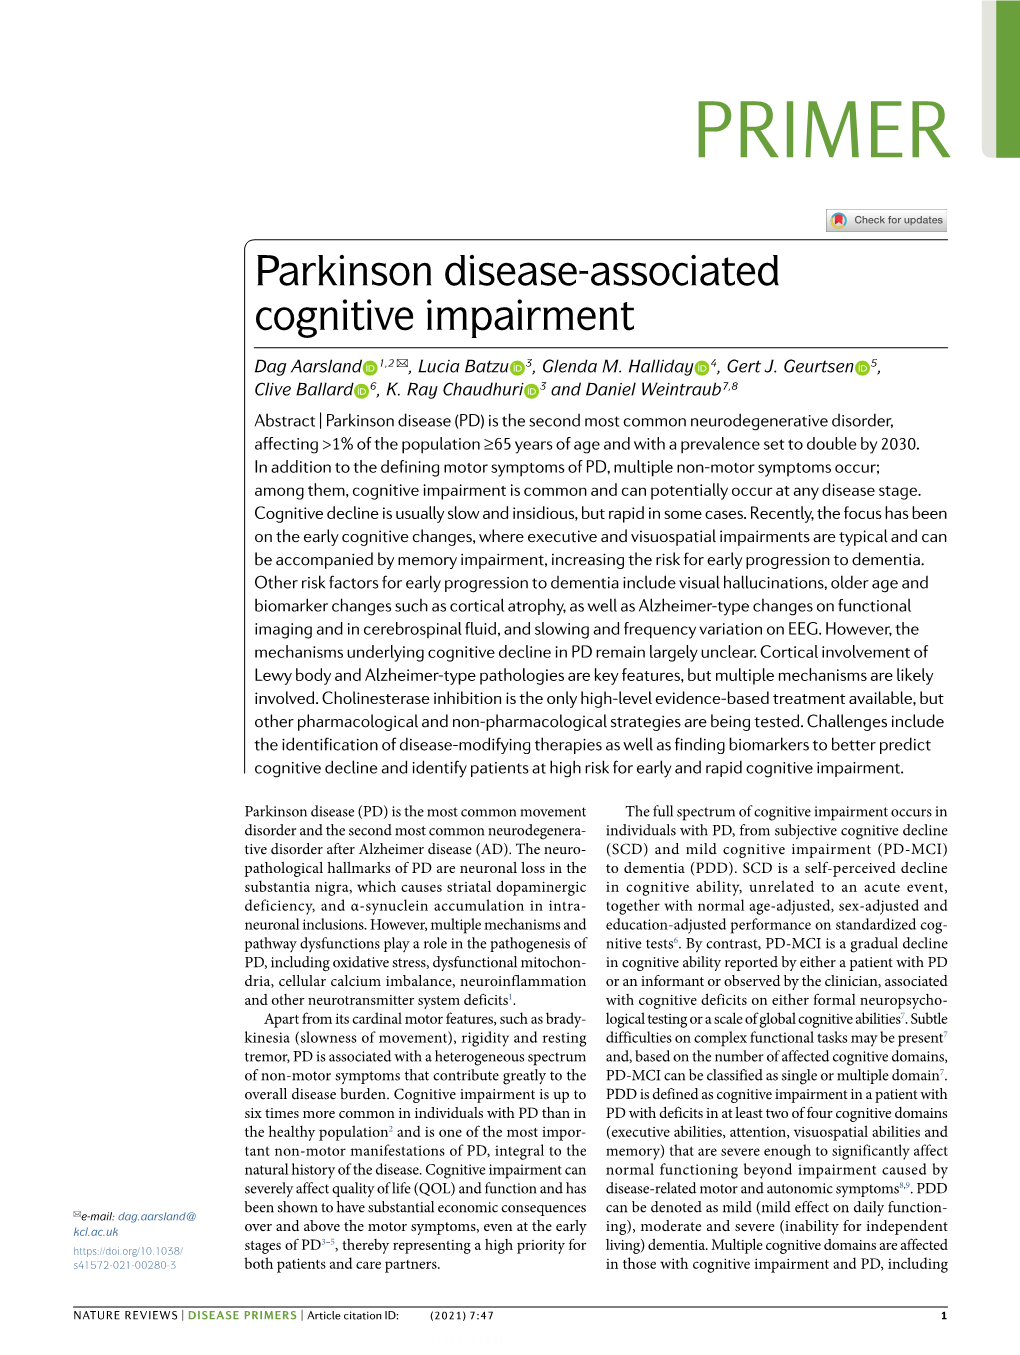 Parkinson Disease-Associated Cognitive Impairment